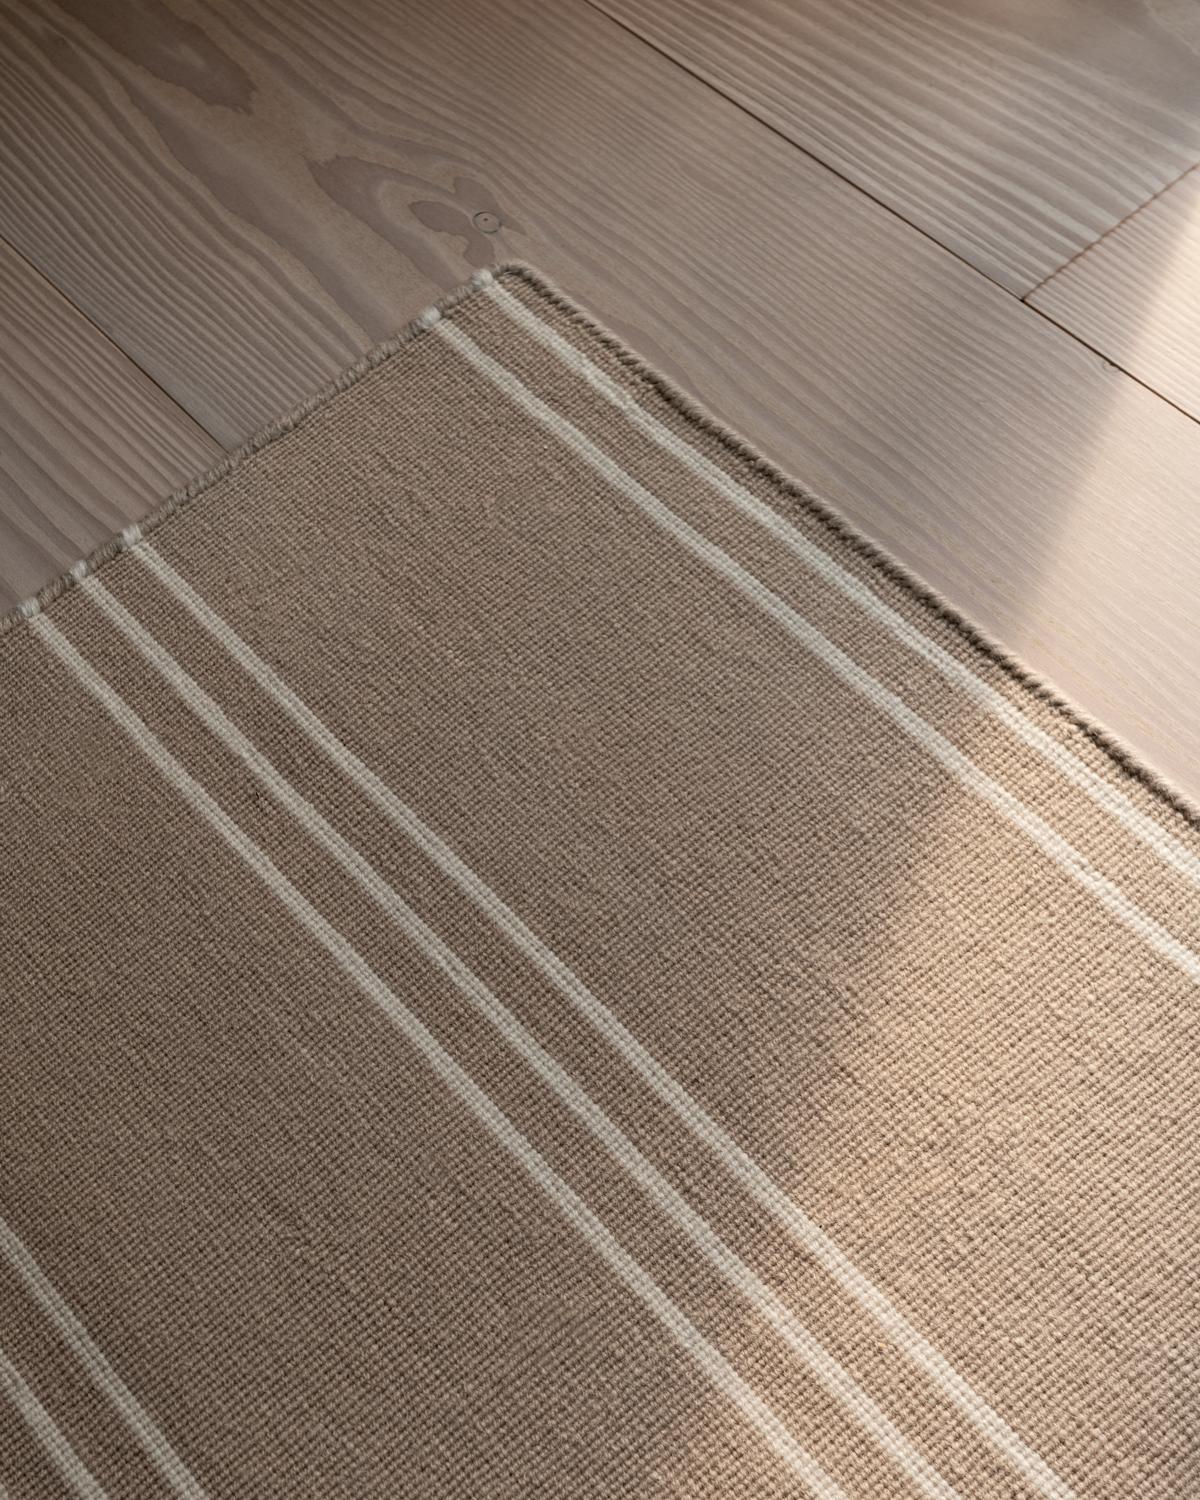 Stripes grau/creme ist ein moderner Dhurrie/Kilim-Teppich im skandinavischen Design.
Es ist zu beachten, dass die Lieferzeiten je nach Größe zwischen 6 Tagen und 9 Wochen variieren.

Das Ziegelsteinmuster verleiht dem Teppich einen einzigartigen